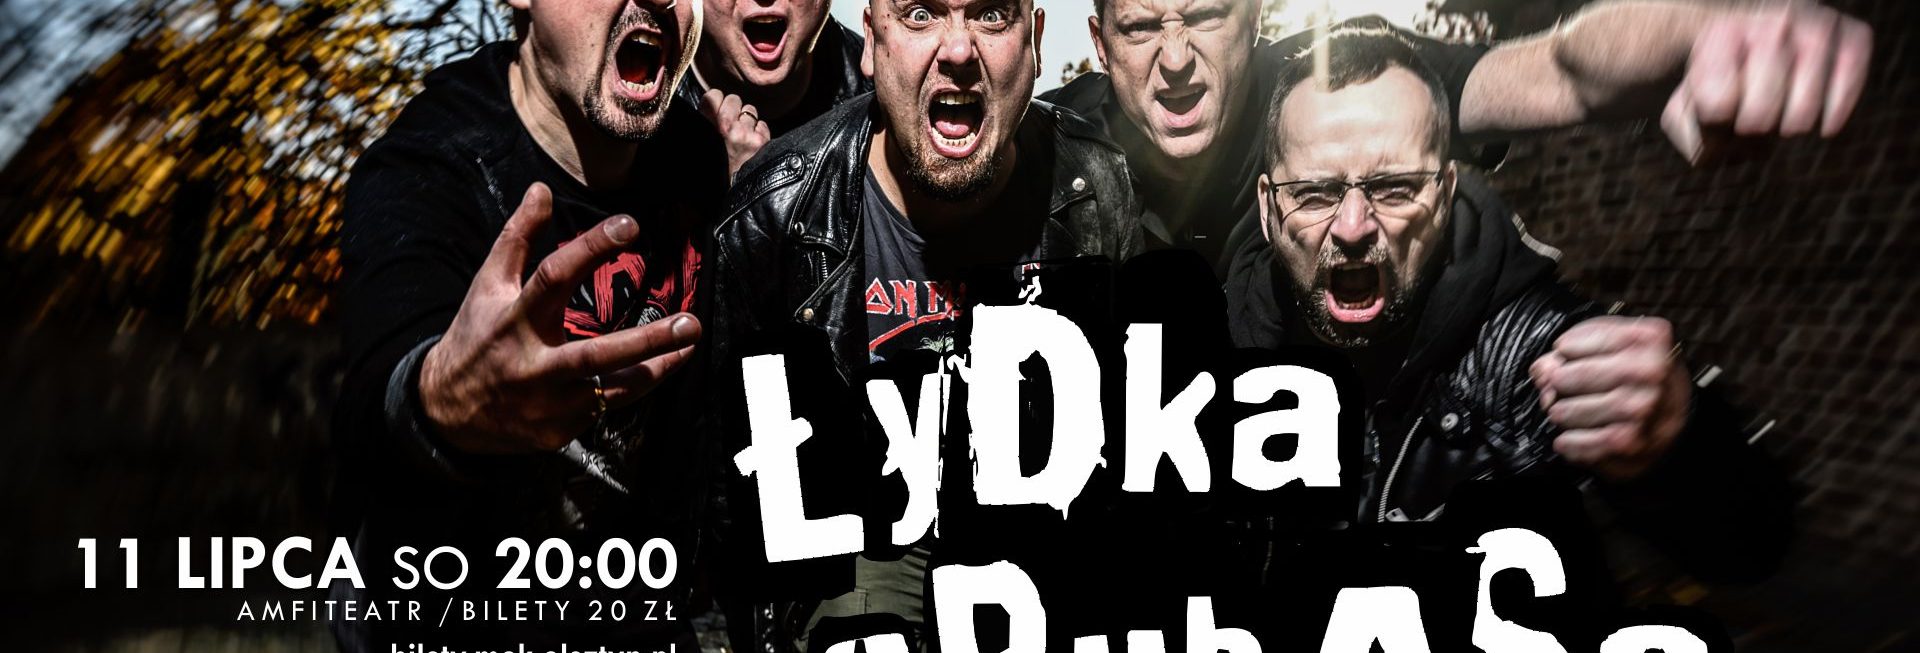 Plakat zespołu Łydka Grubasa zapraszający na koncert do Olsztyna w dniu 11 lipca. Na zdjęciu członkowie zespołu.   